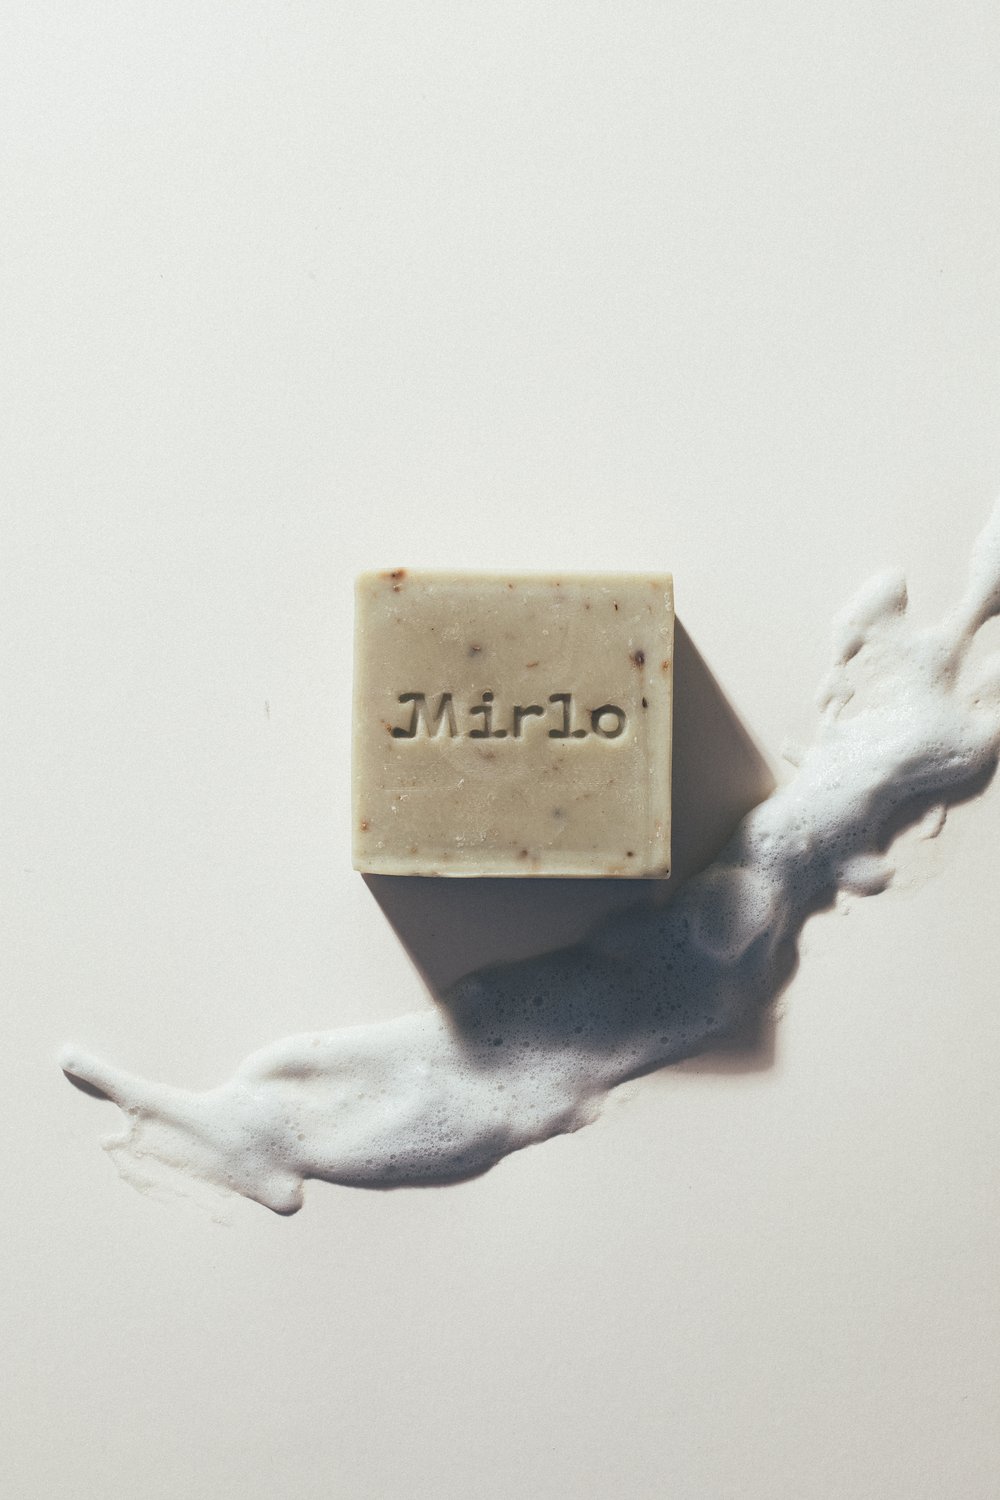 MIRLO_SOAP17.jpg